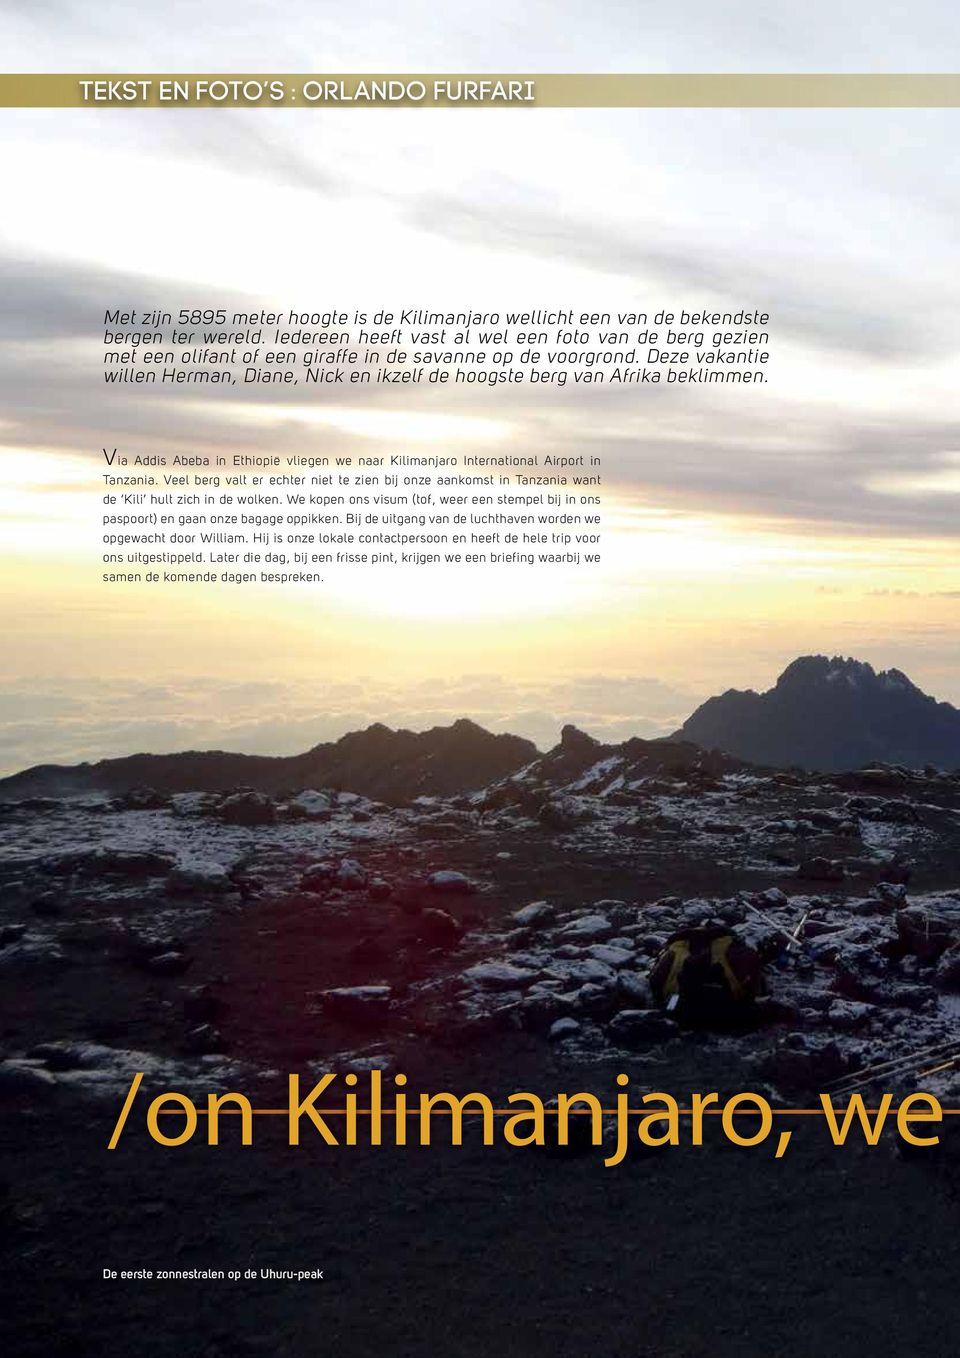 Deze vakantie willen Herman, Diane, Nick en ikzelf de hoogste berg van Afrika beklimmen. Via Addis Abeba in Ethiopië vliegen we naar Kilimanjaro International Airport in Tanzania.